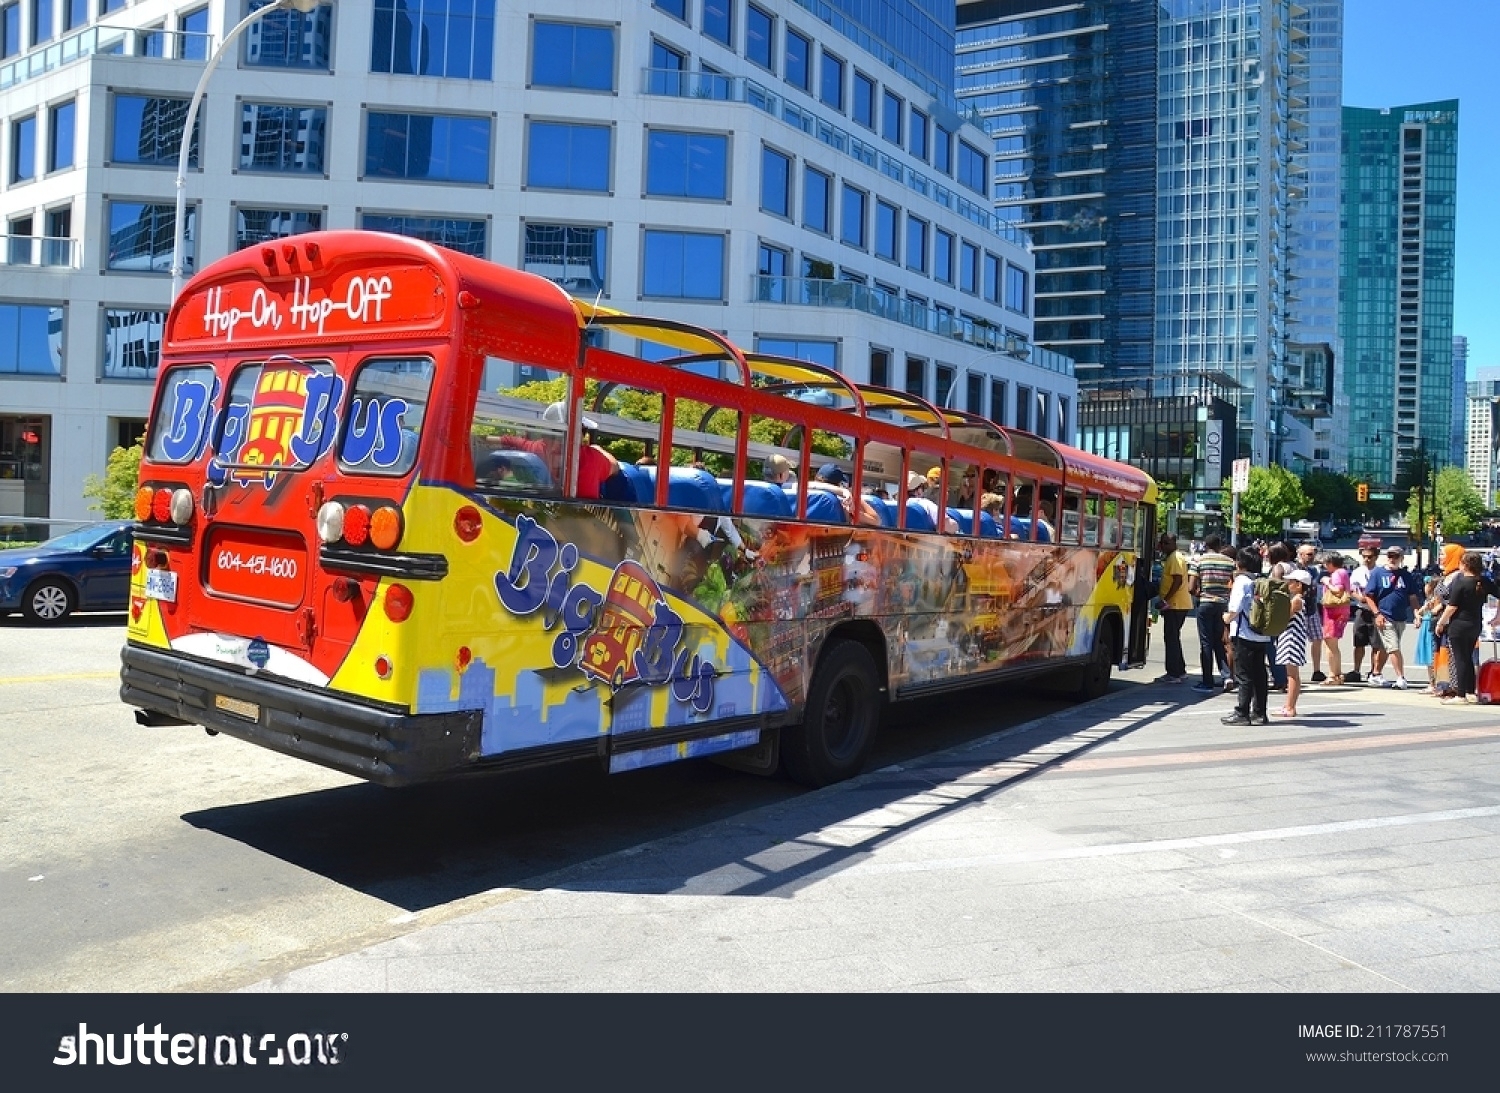 Discover Vancouver via Hop-On Hop-Off Bus Tour